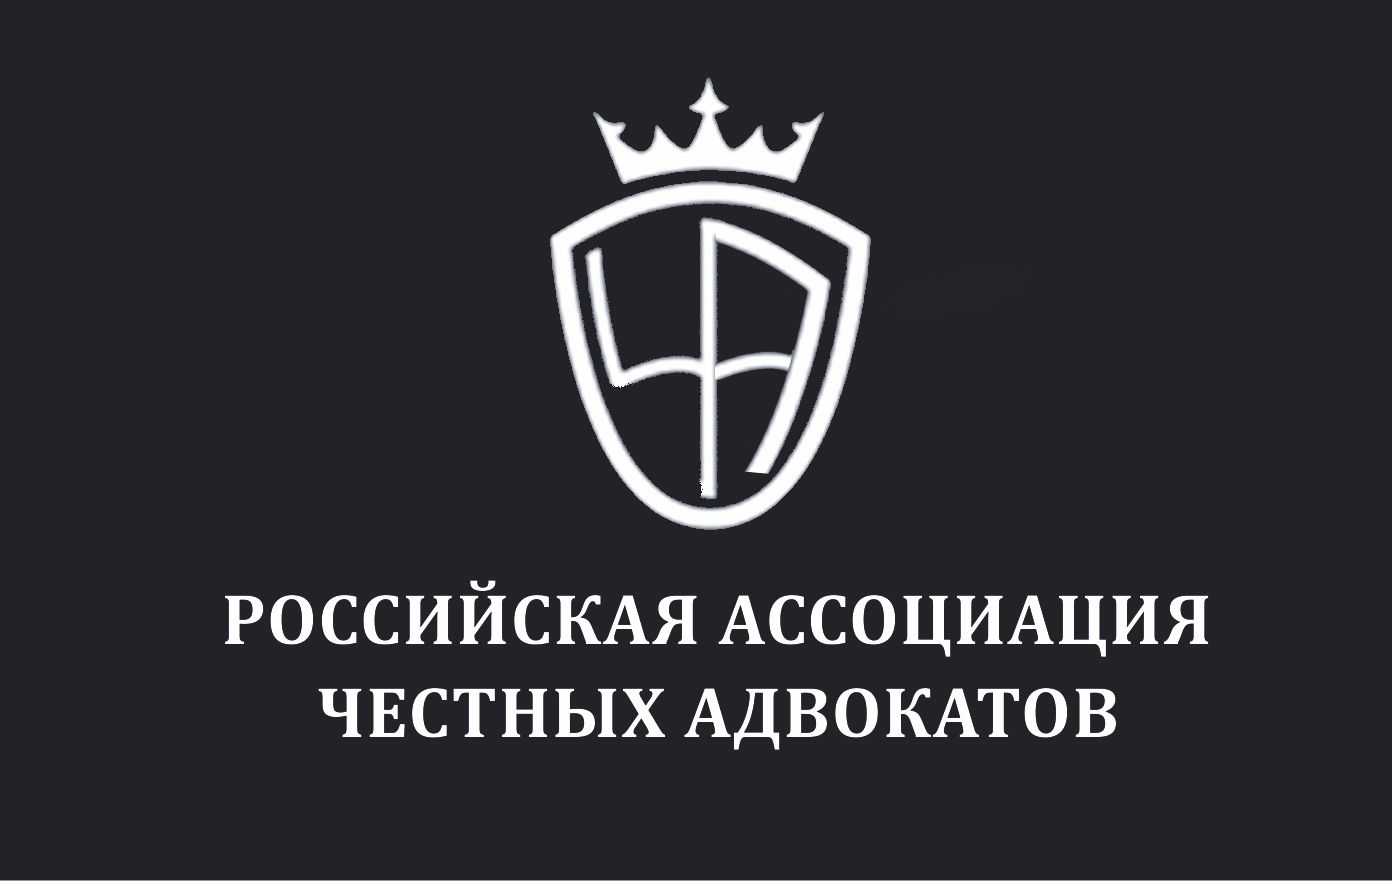 Логотип для Российская ассоциация честных адвокатов - дизайнер Polly668